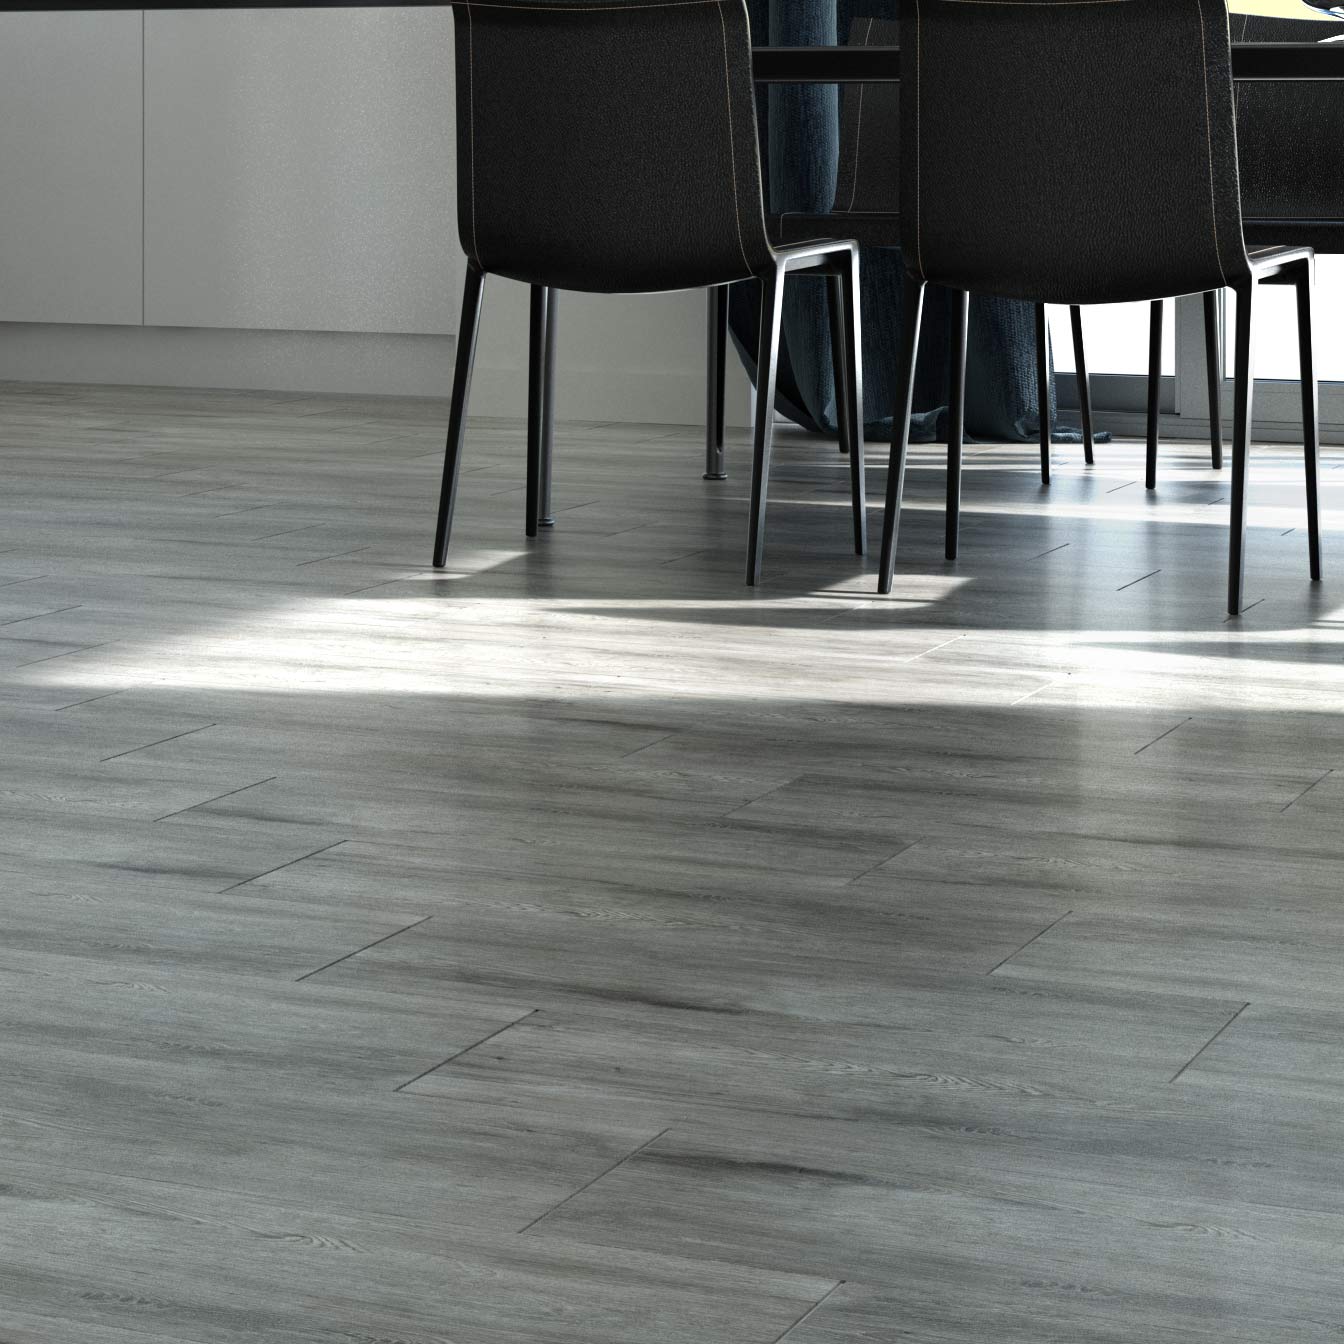 Grey floor tiles